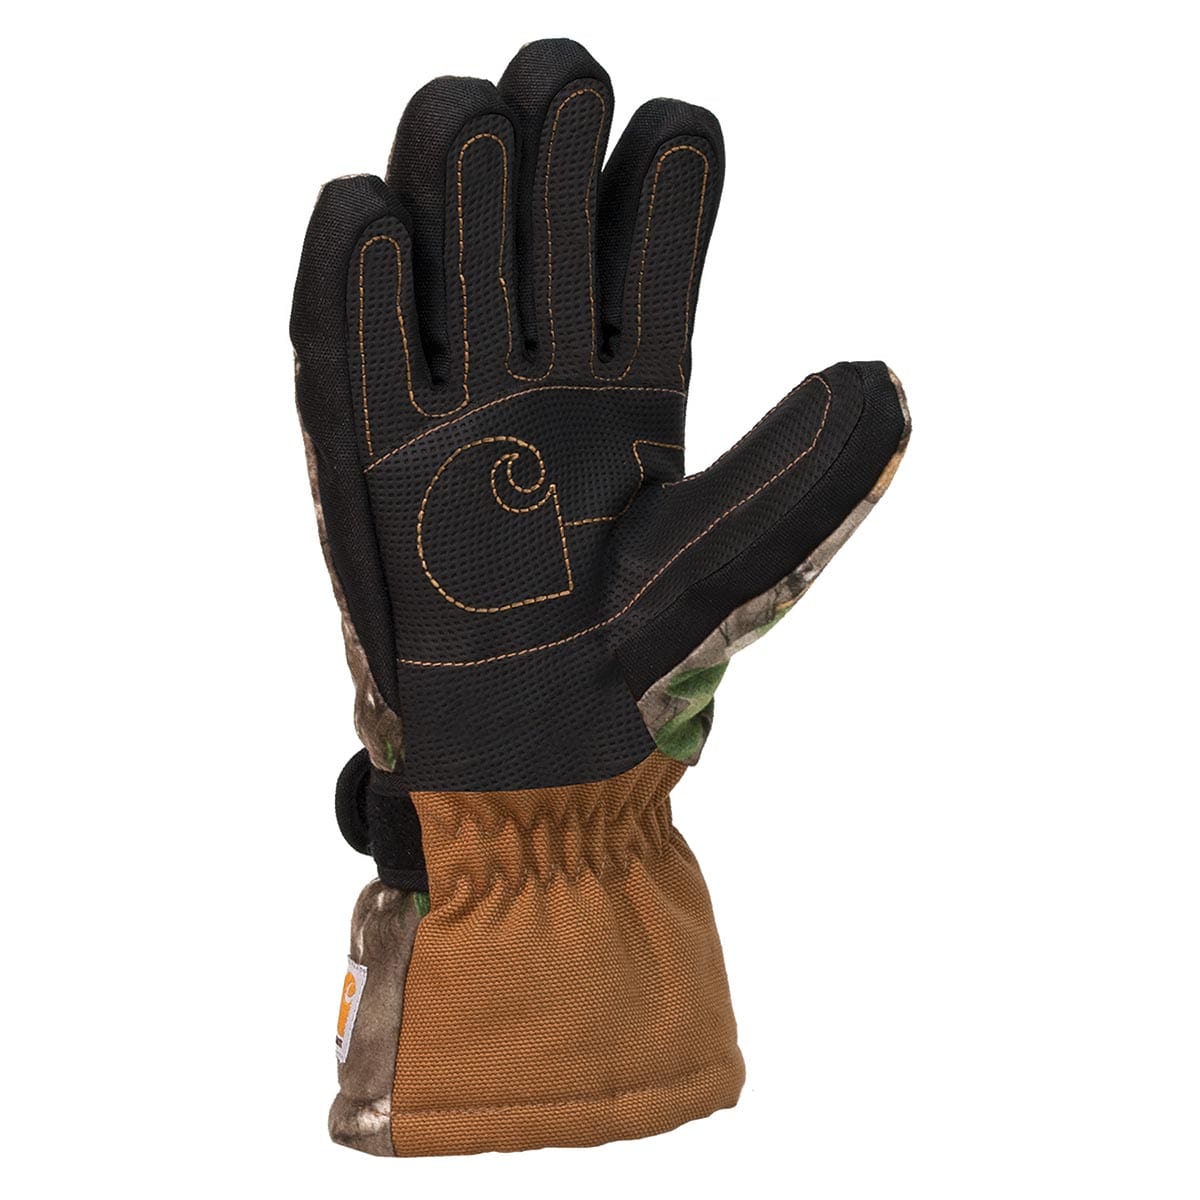 Carhartt Kid's Storm Defender Insulated Camo Gauntlet Glove